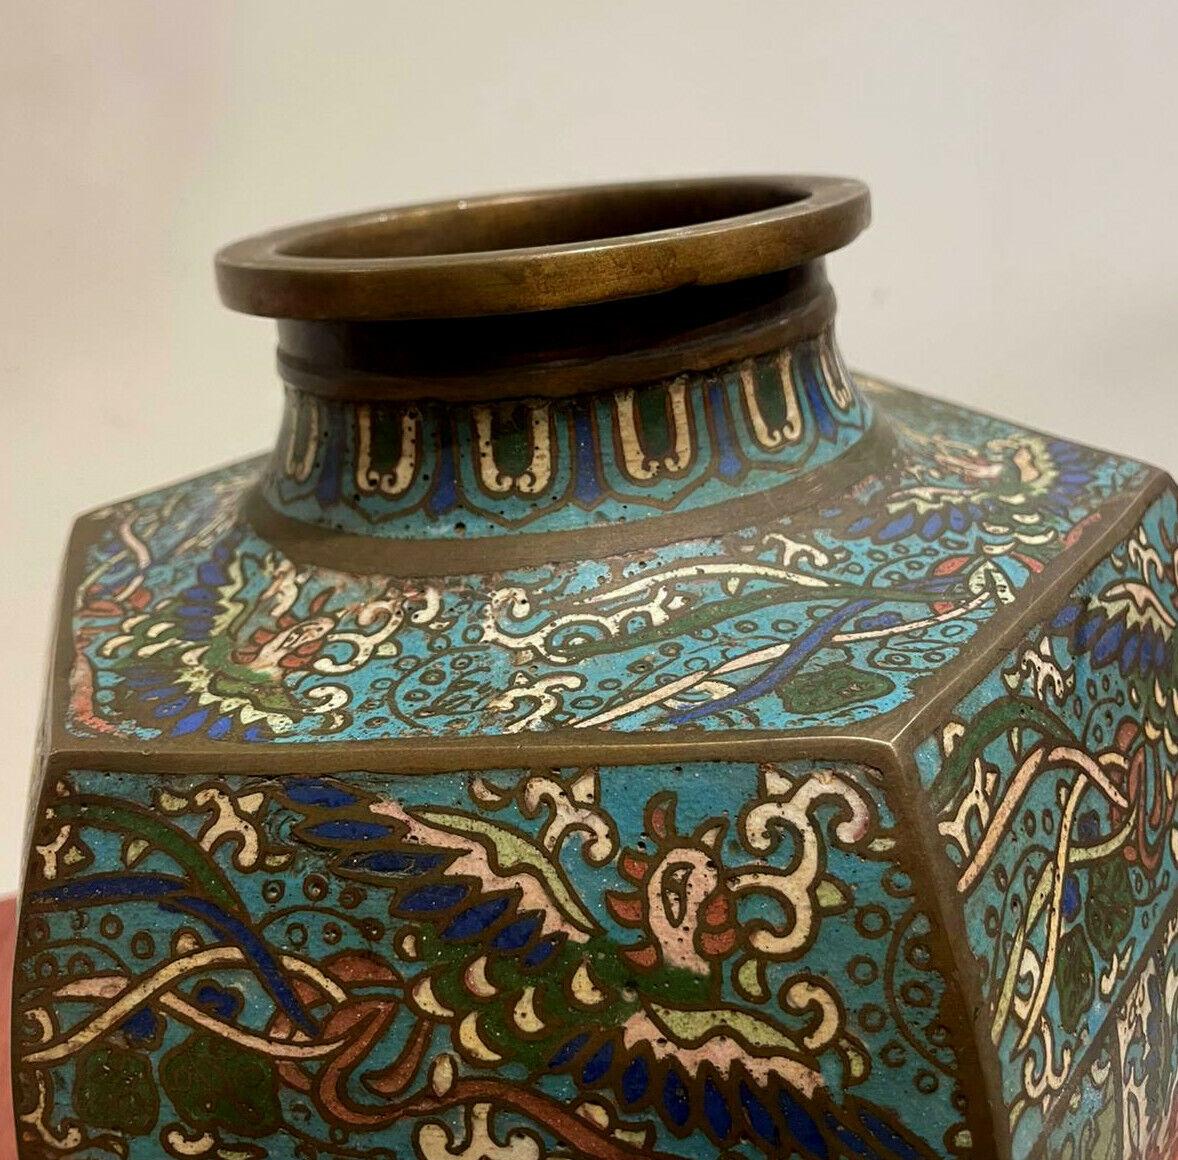 
Vase ancien du milieu du XIXe siècle de la dynastie chinoise Qing
Émail cloisonné et bronze

Le vase est orné de phénix et de grues,
qui symbolise le renouveau et la renaissance
& décoré d'un motif floral

35cm de haut

en très bon état